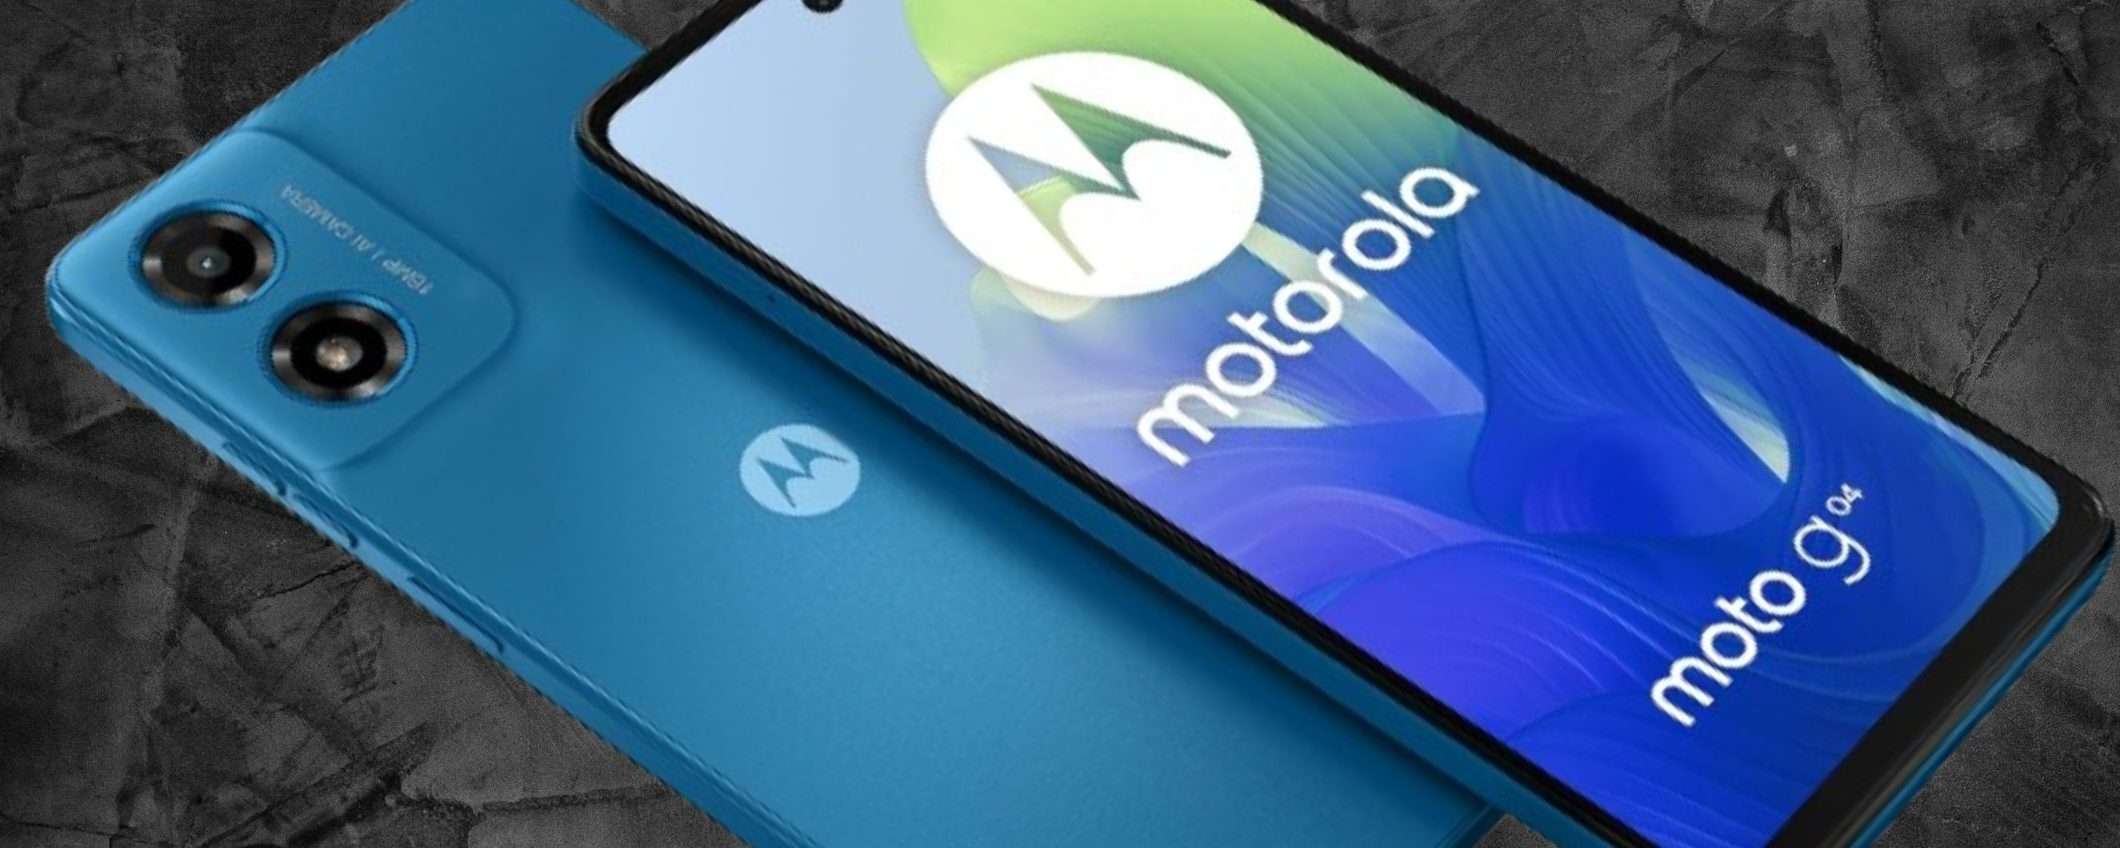 Motorola Moto g04 a 96€ è DA AVERE: display 90Hz, 5000 mAh, design PREMIUM